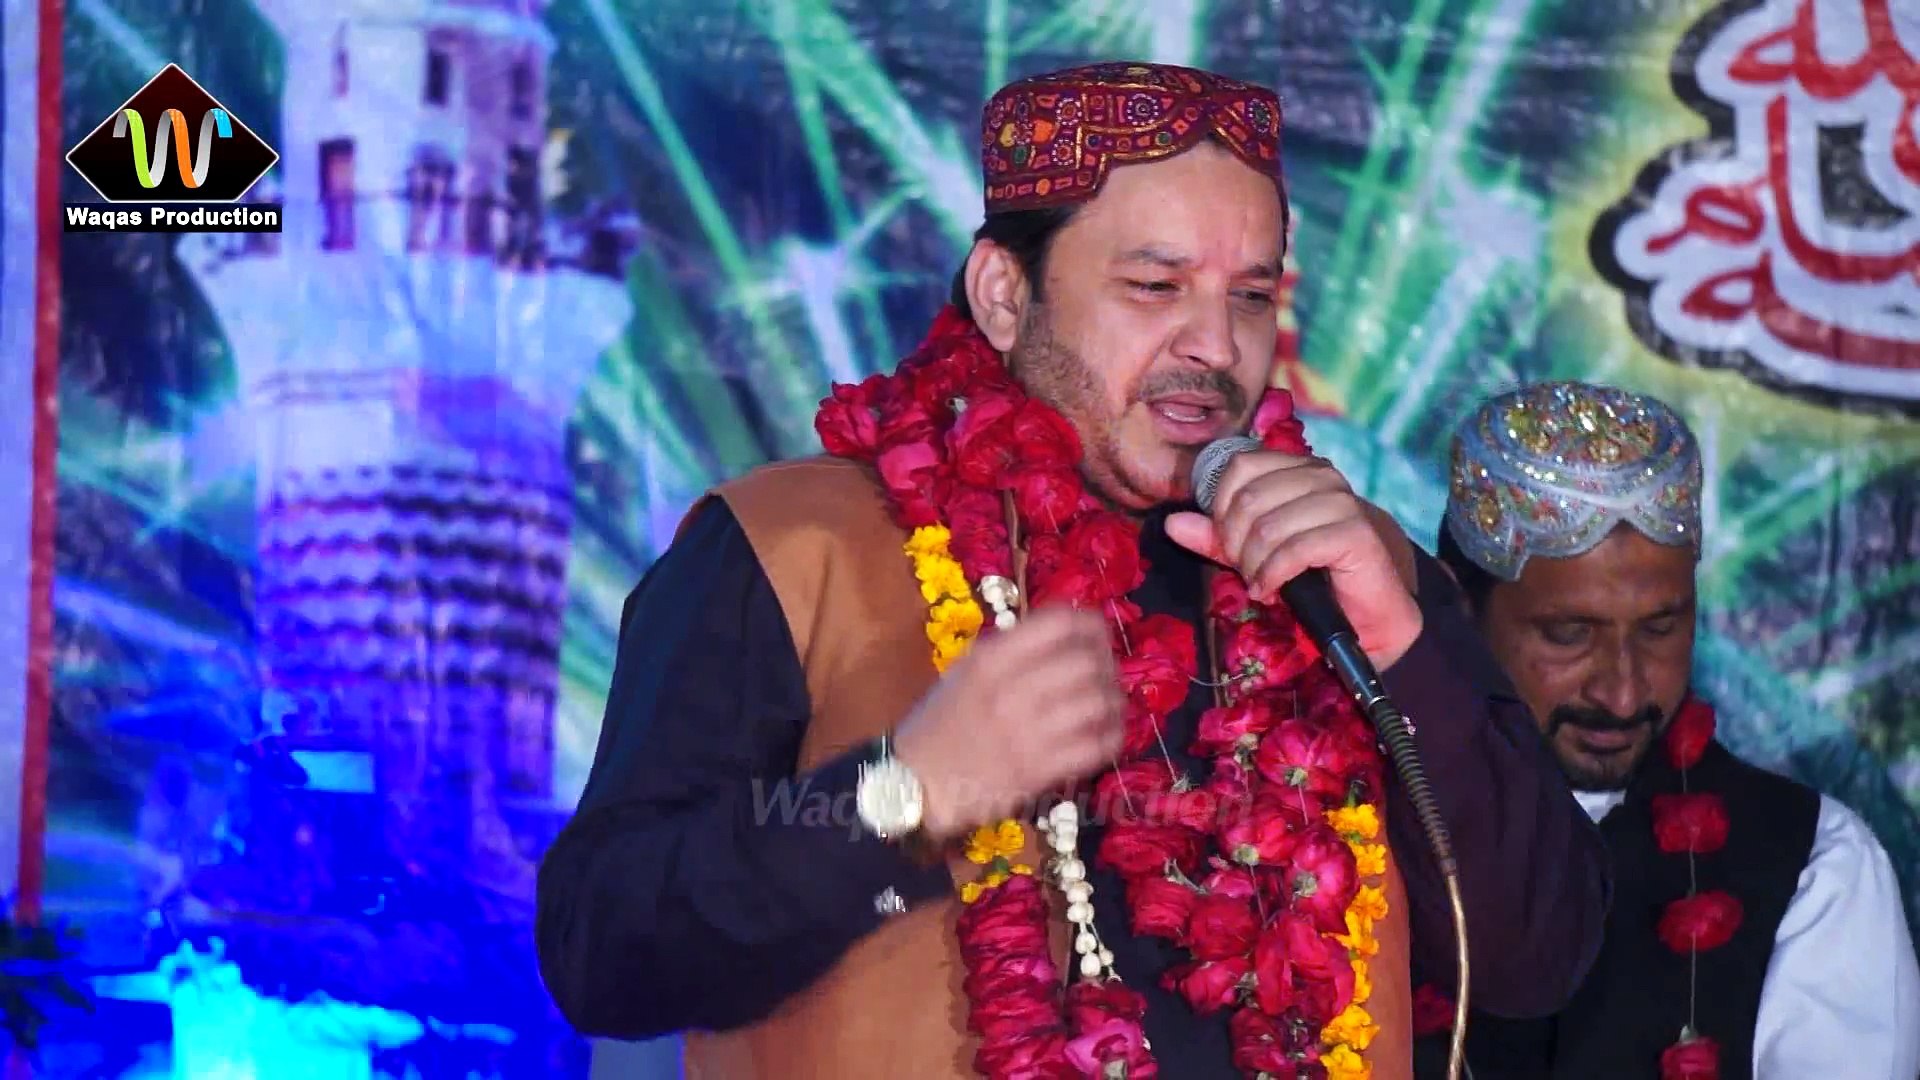 Tajdar-e-Haram By Shahbaz Qamar Fareedi-HD 1080p-Waqas  Production(Kabirwala-Khanewal) 0345-7325036 - video Dailymotion